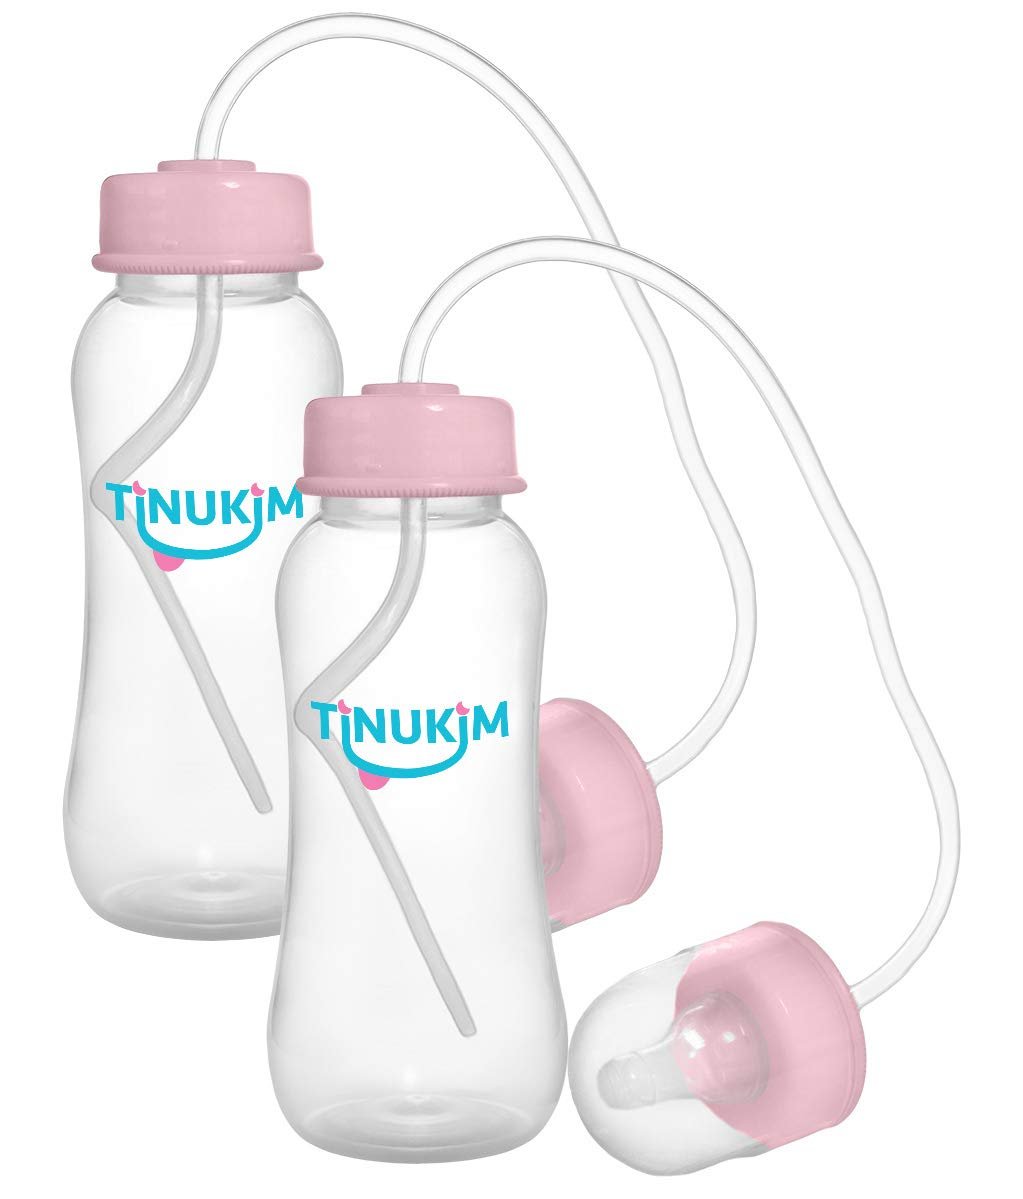 Tinukim iFeed Baby Bottle 9oz Pink | Self-Feeding Tube | Anti-Colic Nursing | 2 Pack | Size: 2 Count